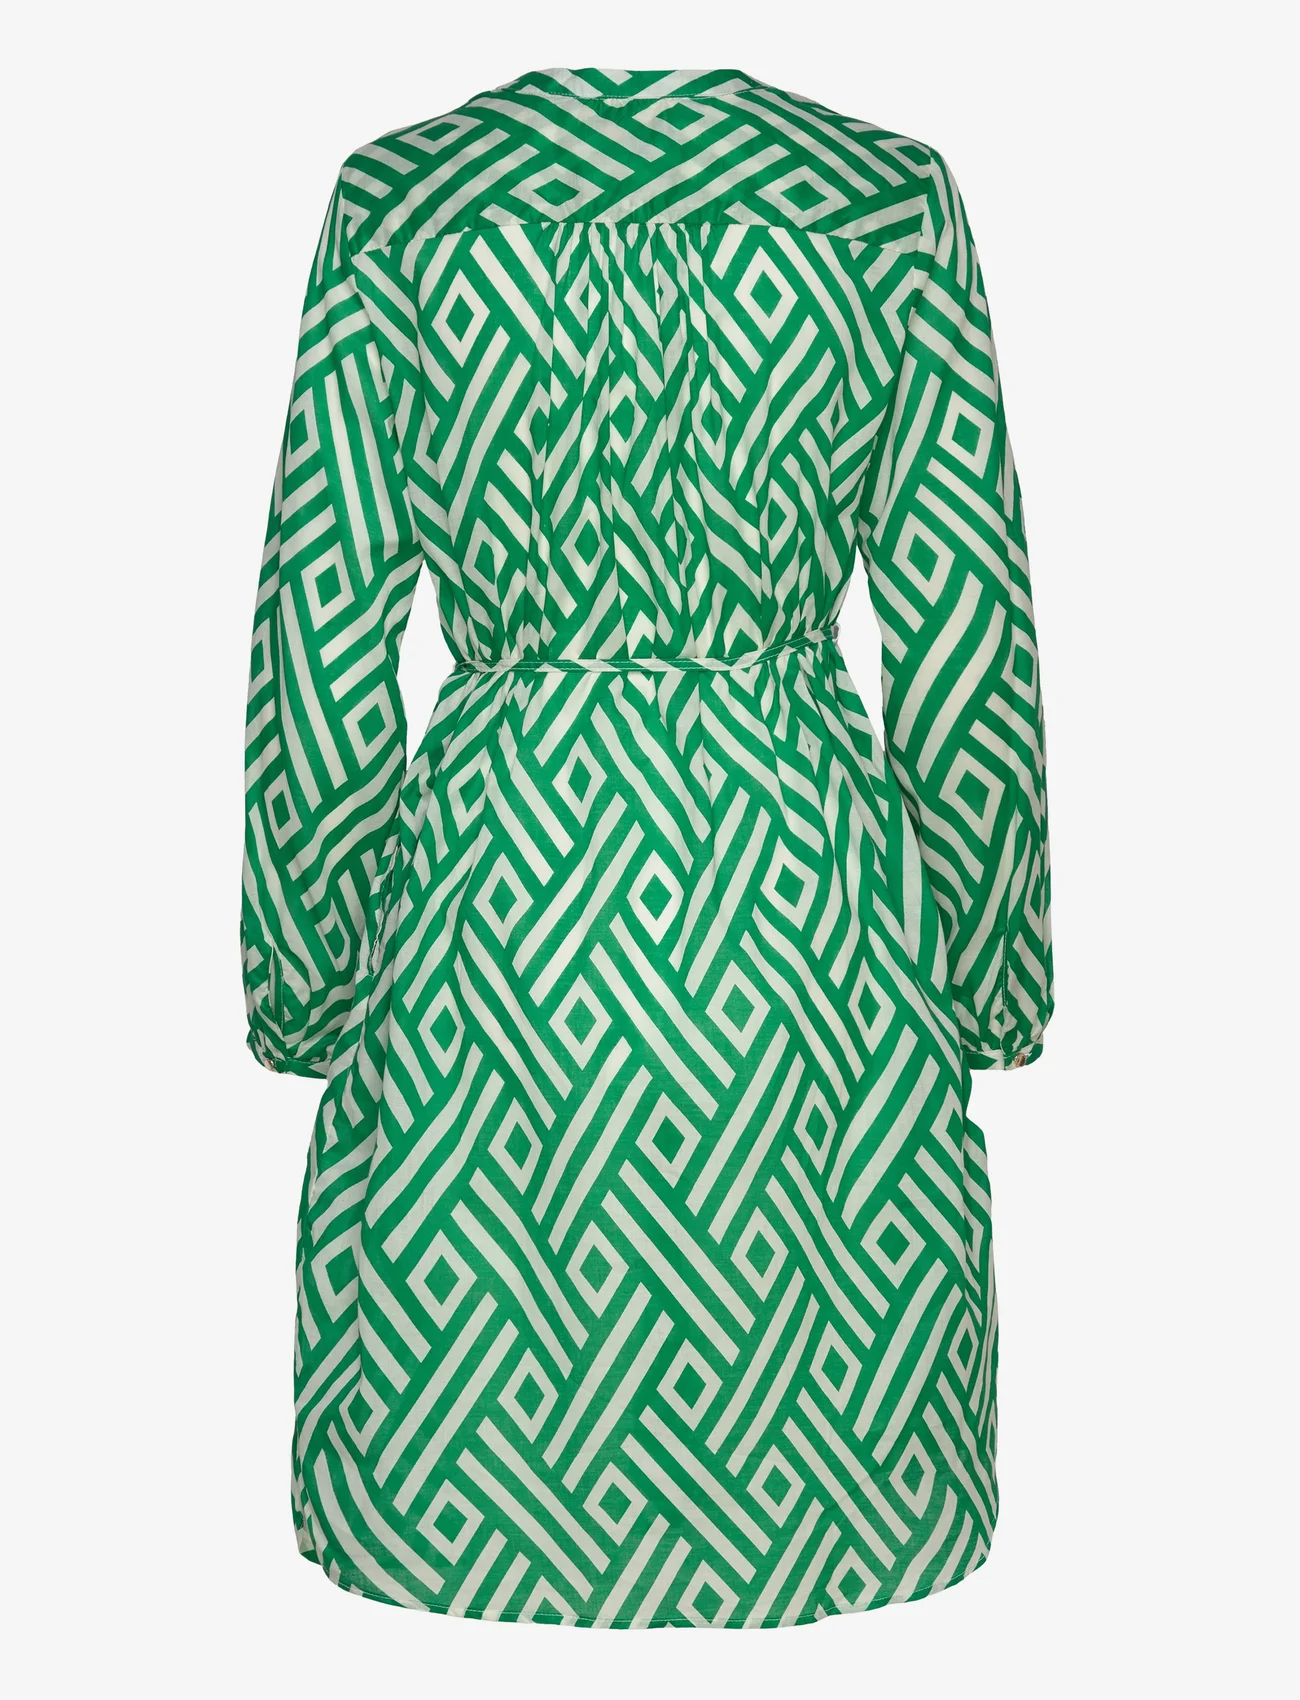 Lindex - Dress Marissa voile - najniższe ceny - green - 1